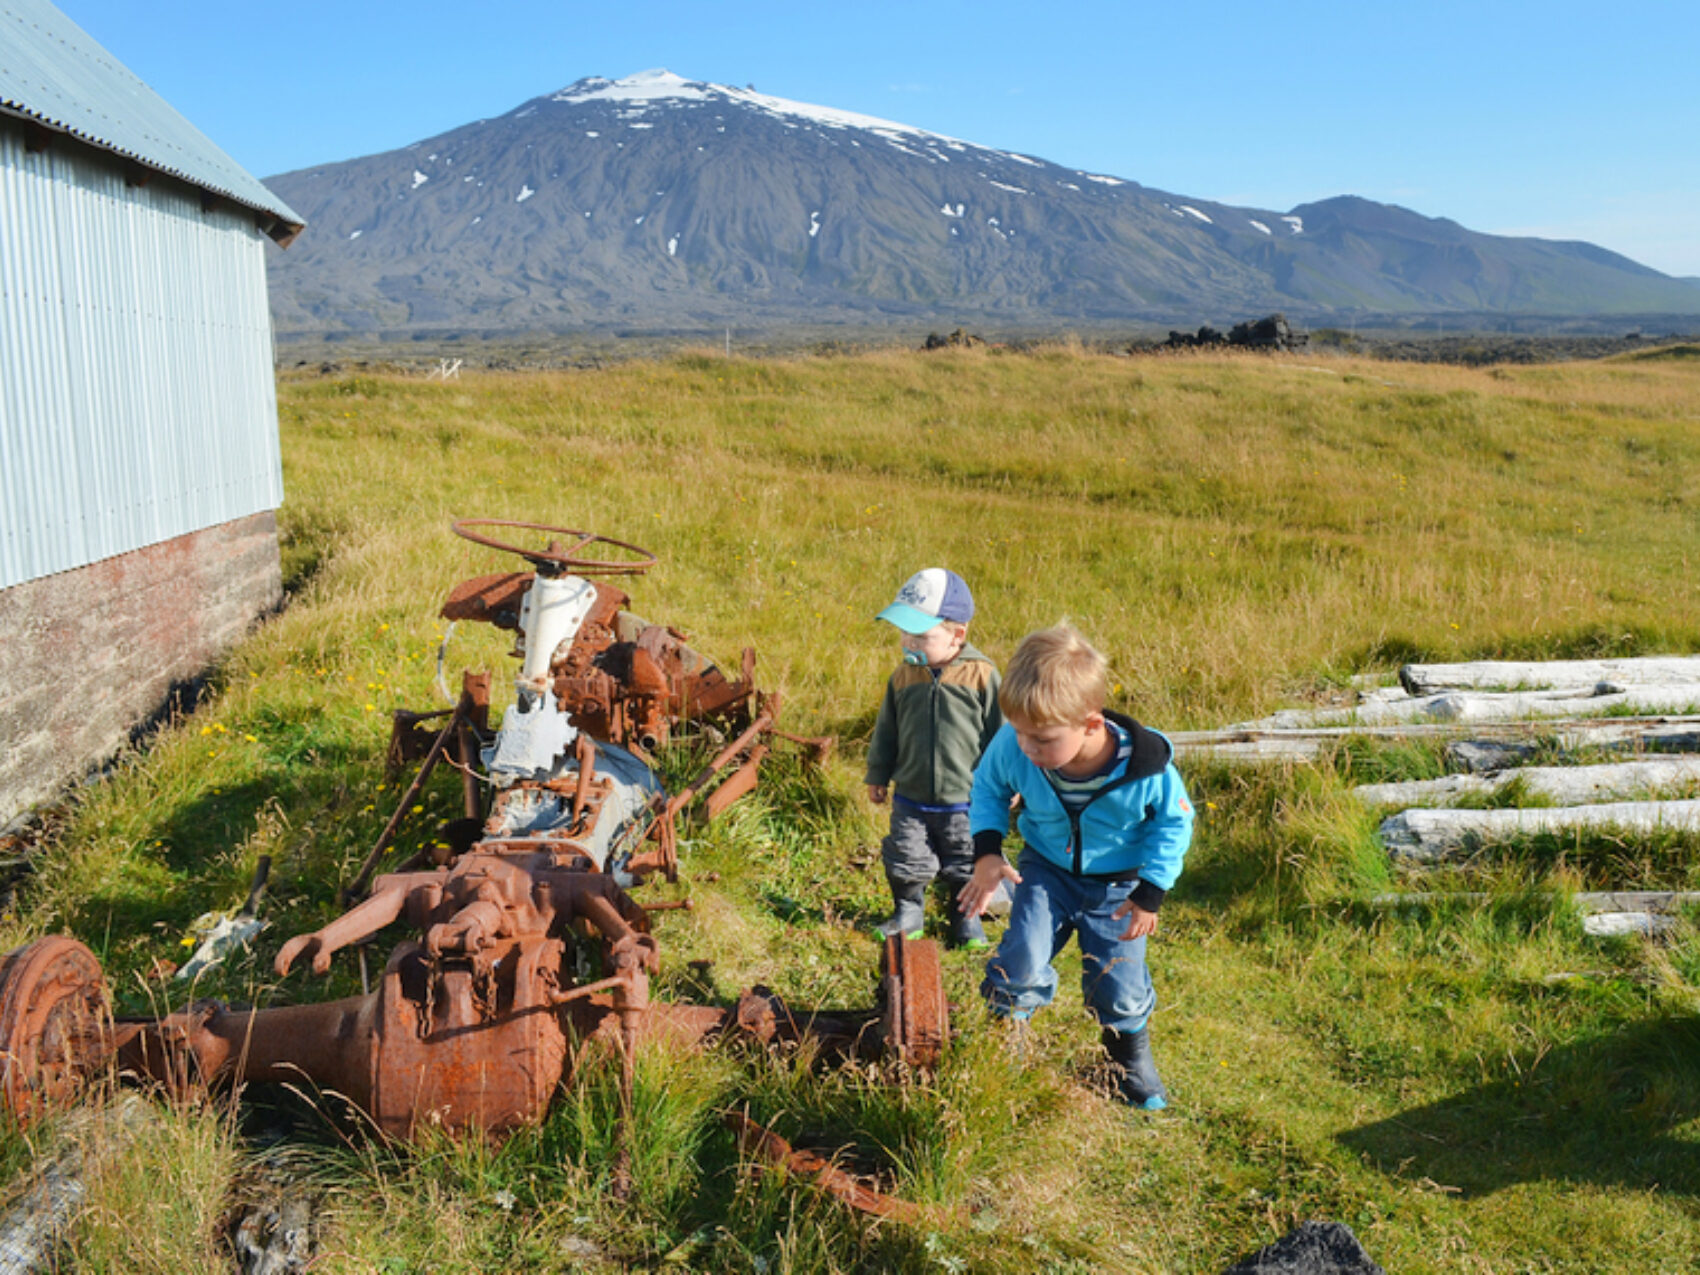 Kinder auf Schatzsuche vor den Füßen des Snaefellsjökull, alter verrosteter Traktor, Hintergrund Berg mit weißer Spitze, grüne Wiese